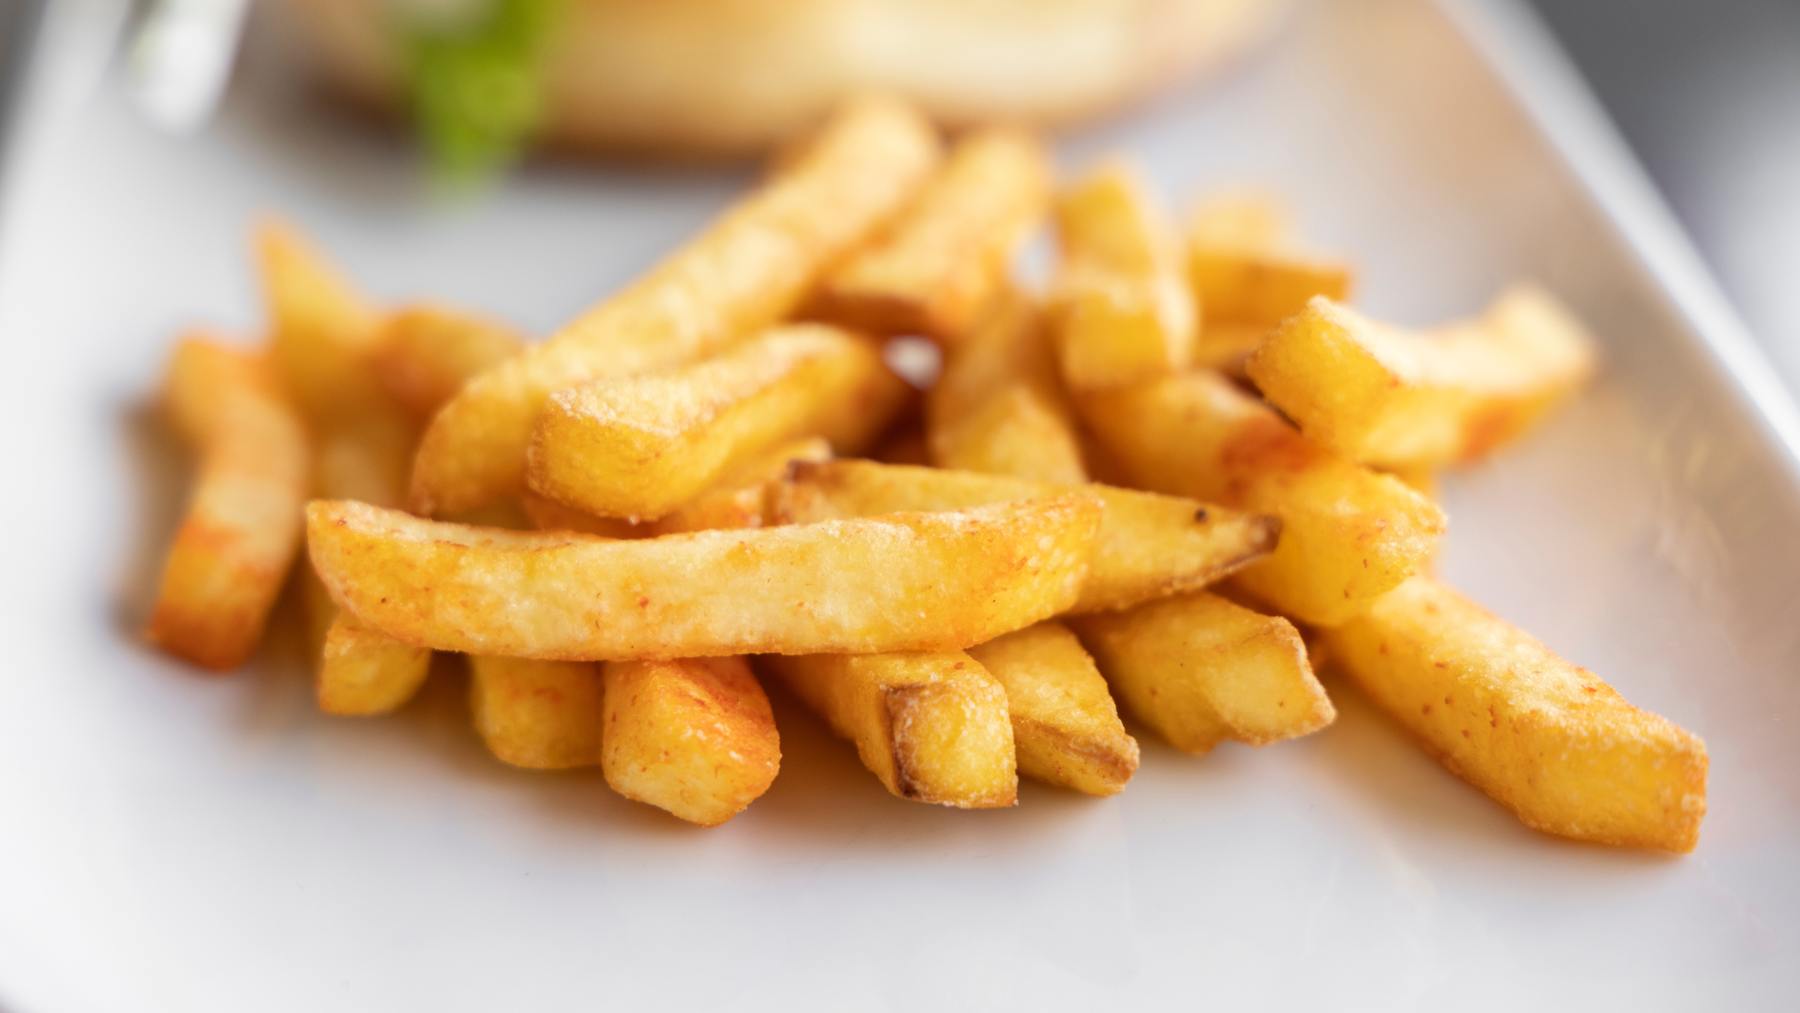 Crujiente y delicioso: cómo hacer patatas fritas 🍟 congeladas en